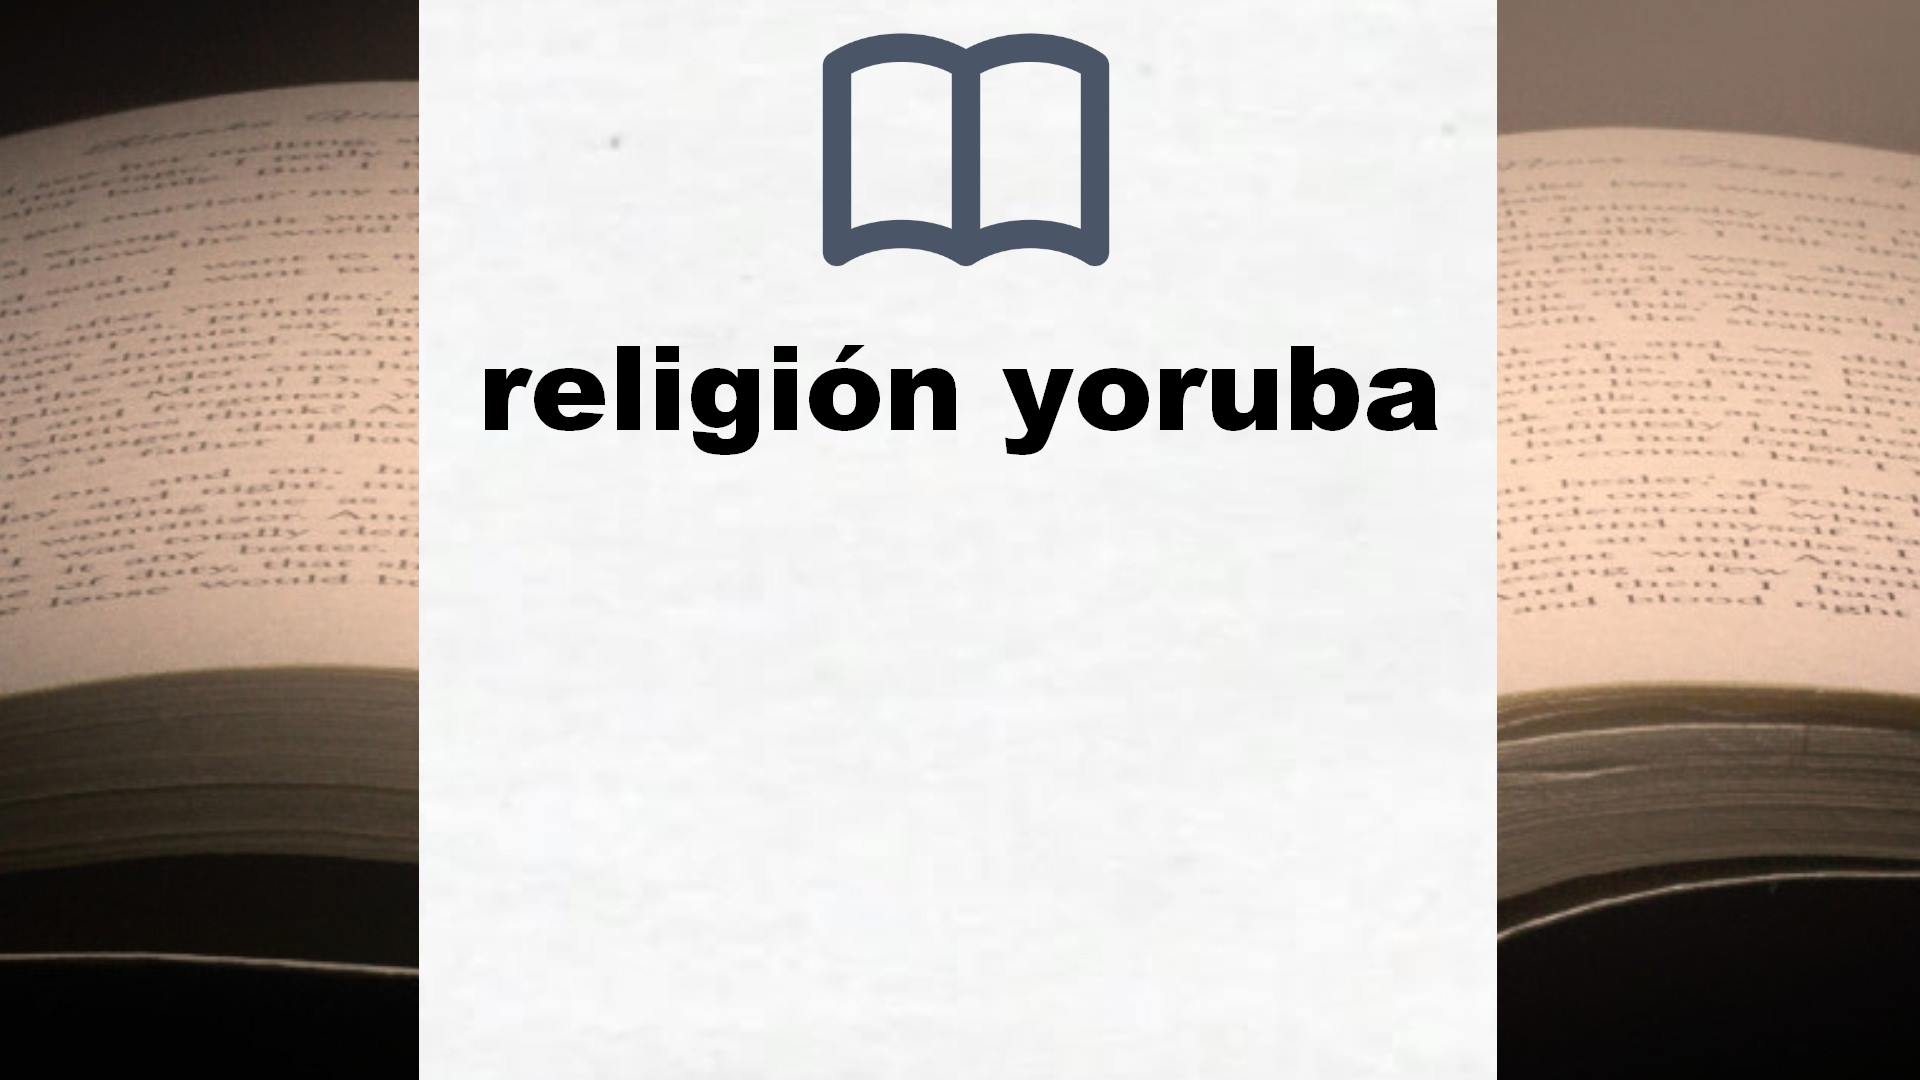 Libros sobre religión yoruba